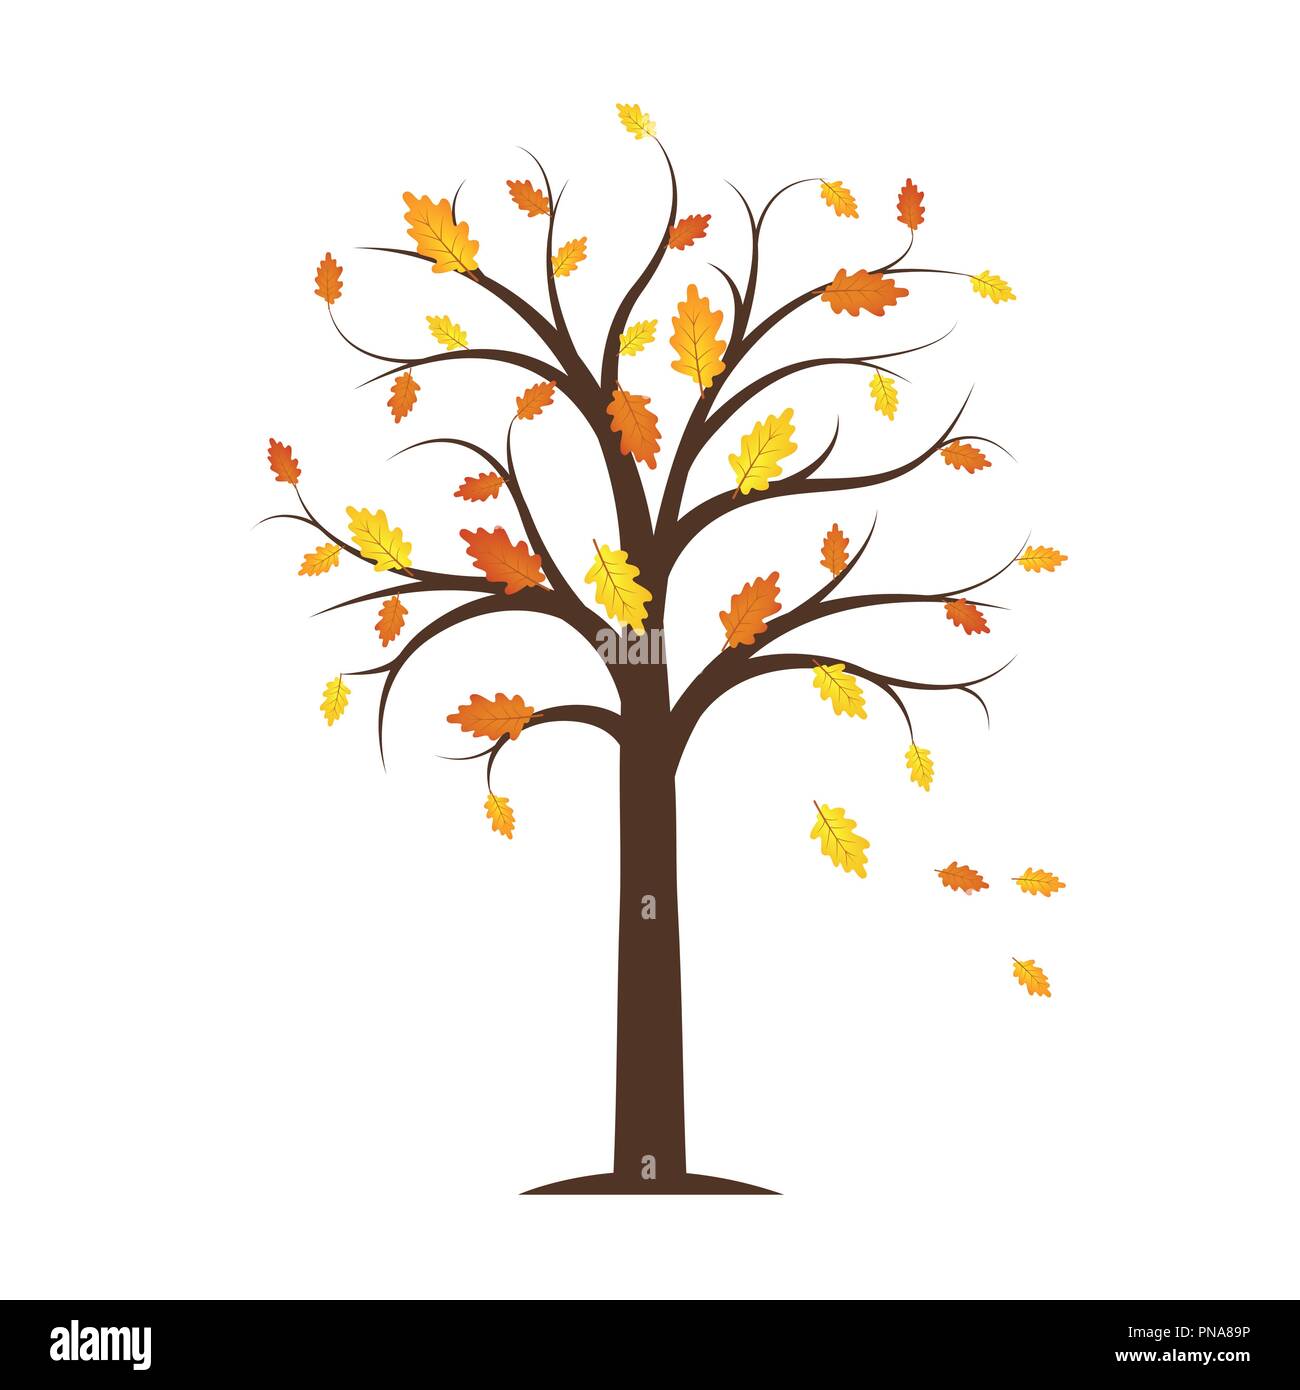 Autumn Tree con giallo e arancione caduta foglie isolate su uno sfondo bianco illustrazione vettoriale EPS10 Illustrazione Vettoriale